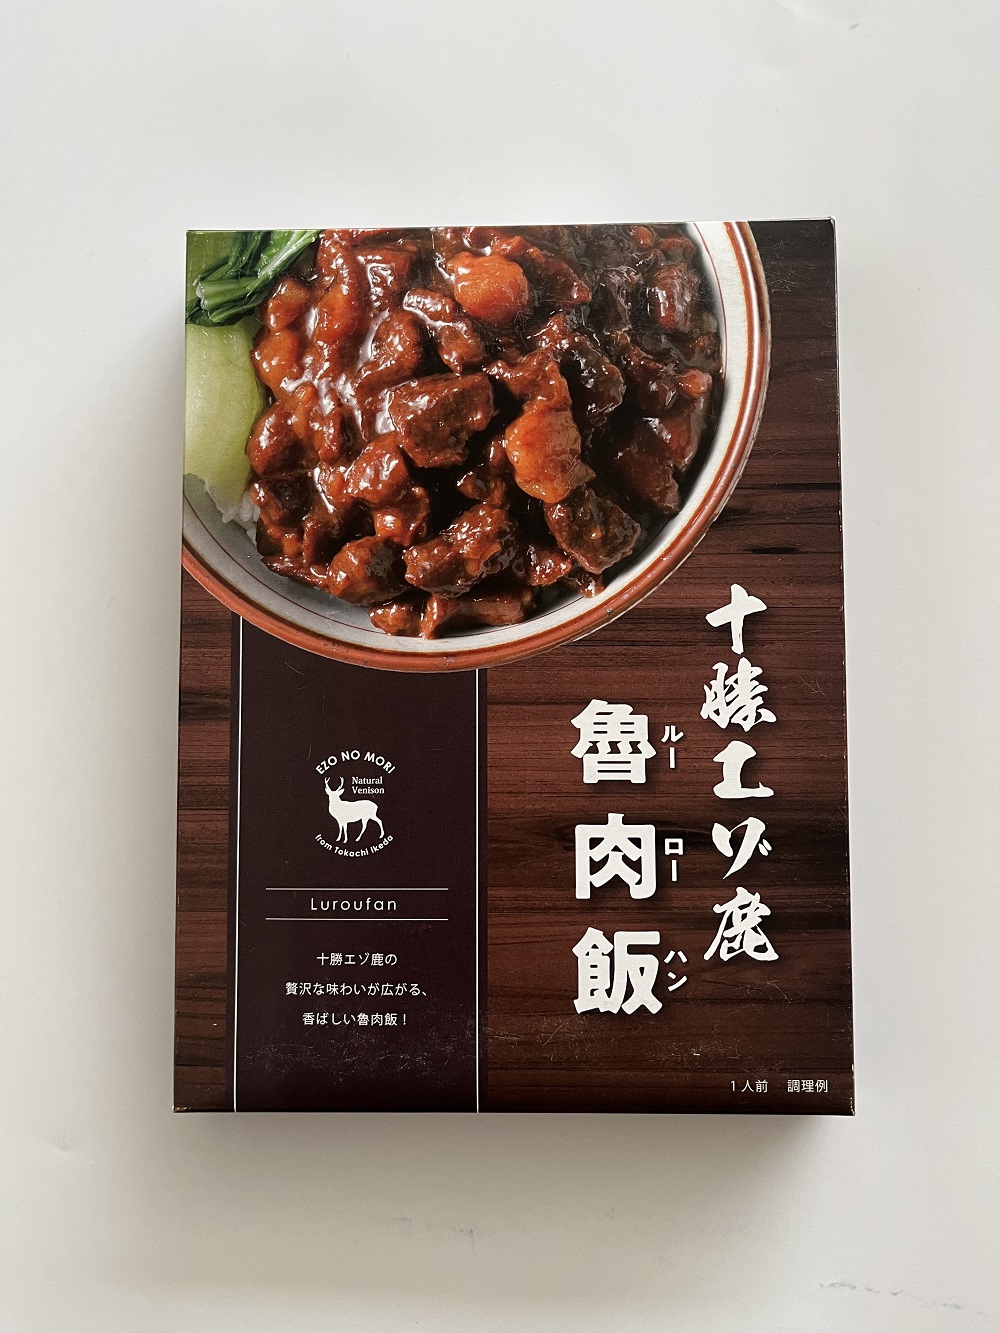 ジビエ 北海道  鹿肉  レトルト  魯肉飯(ルーローハン) 5袋